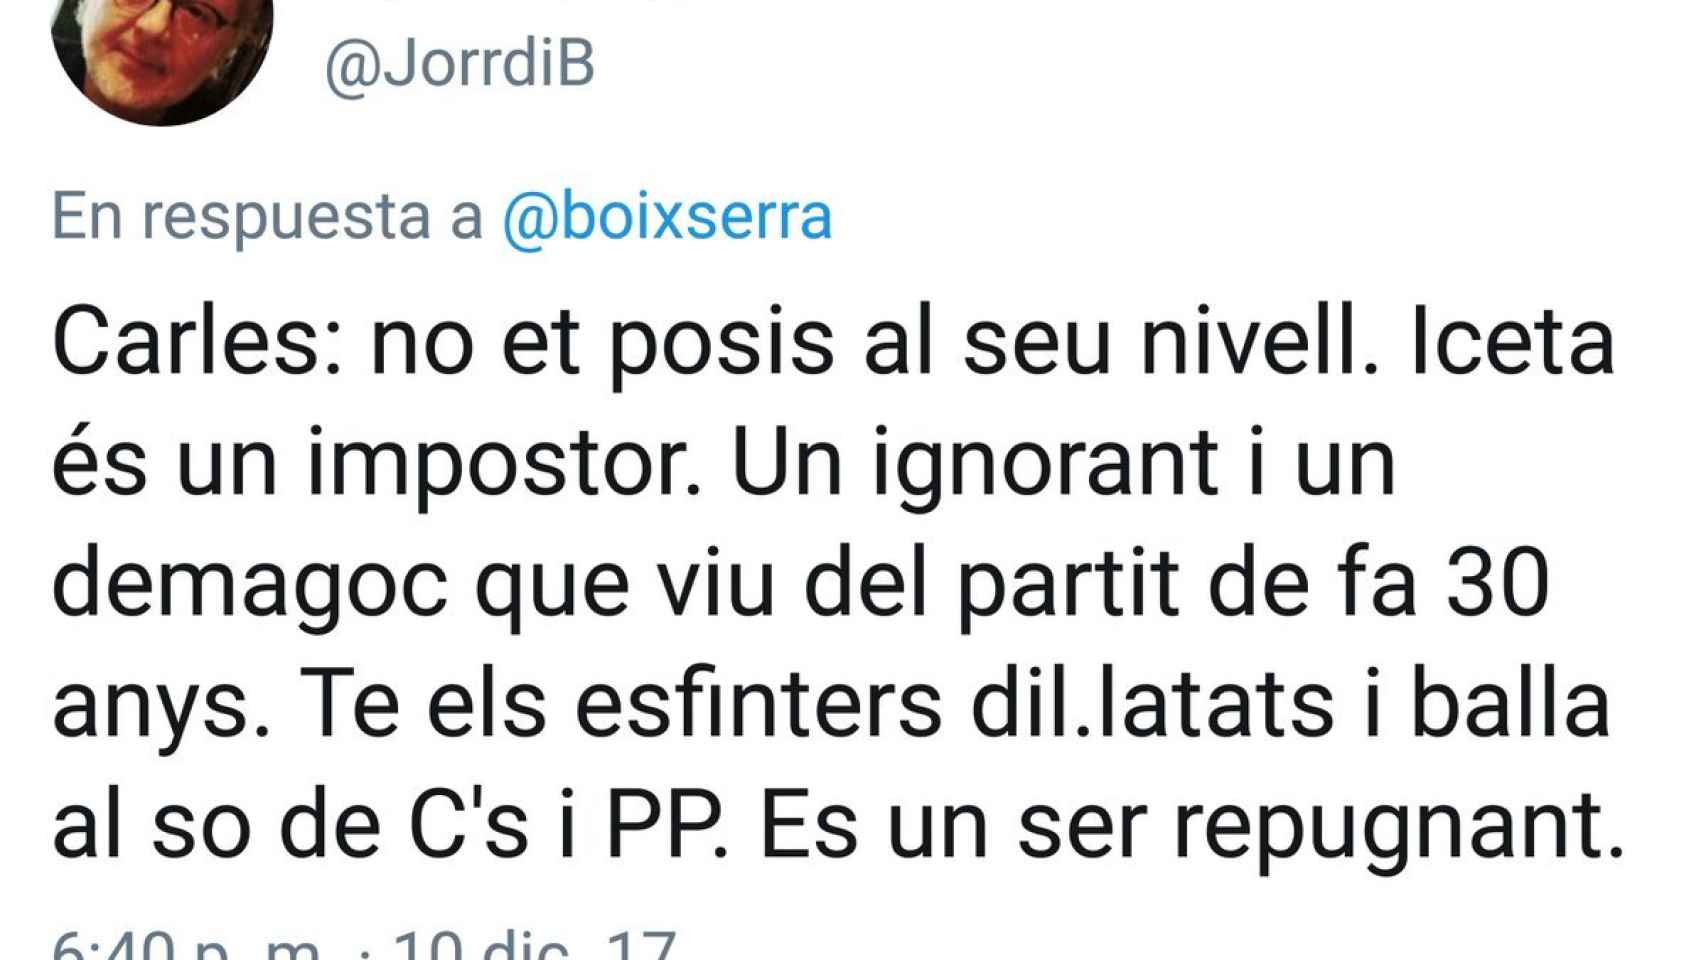 Tuit del profesor Borrell contra Miquel Iceta.